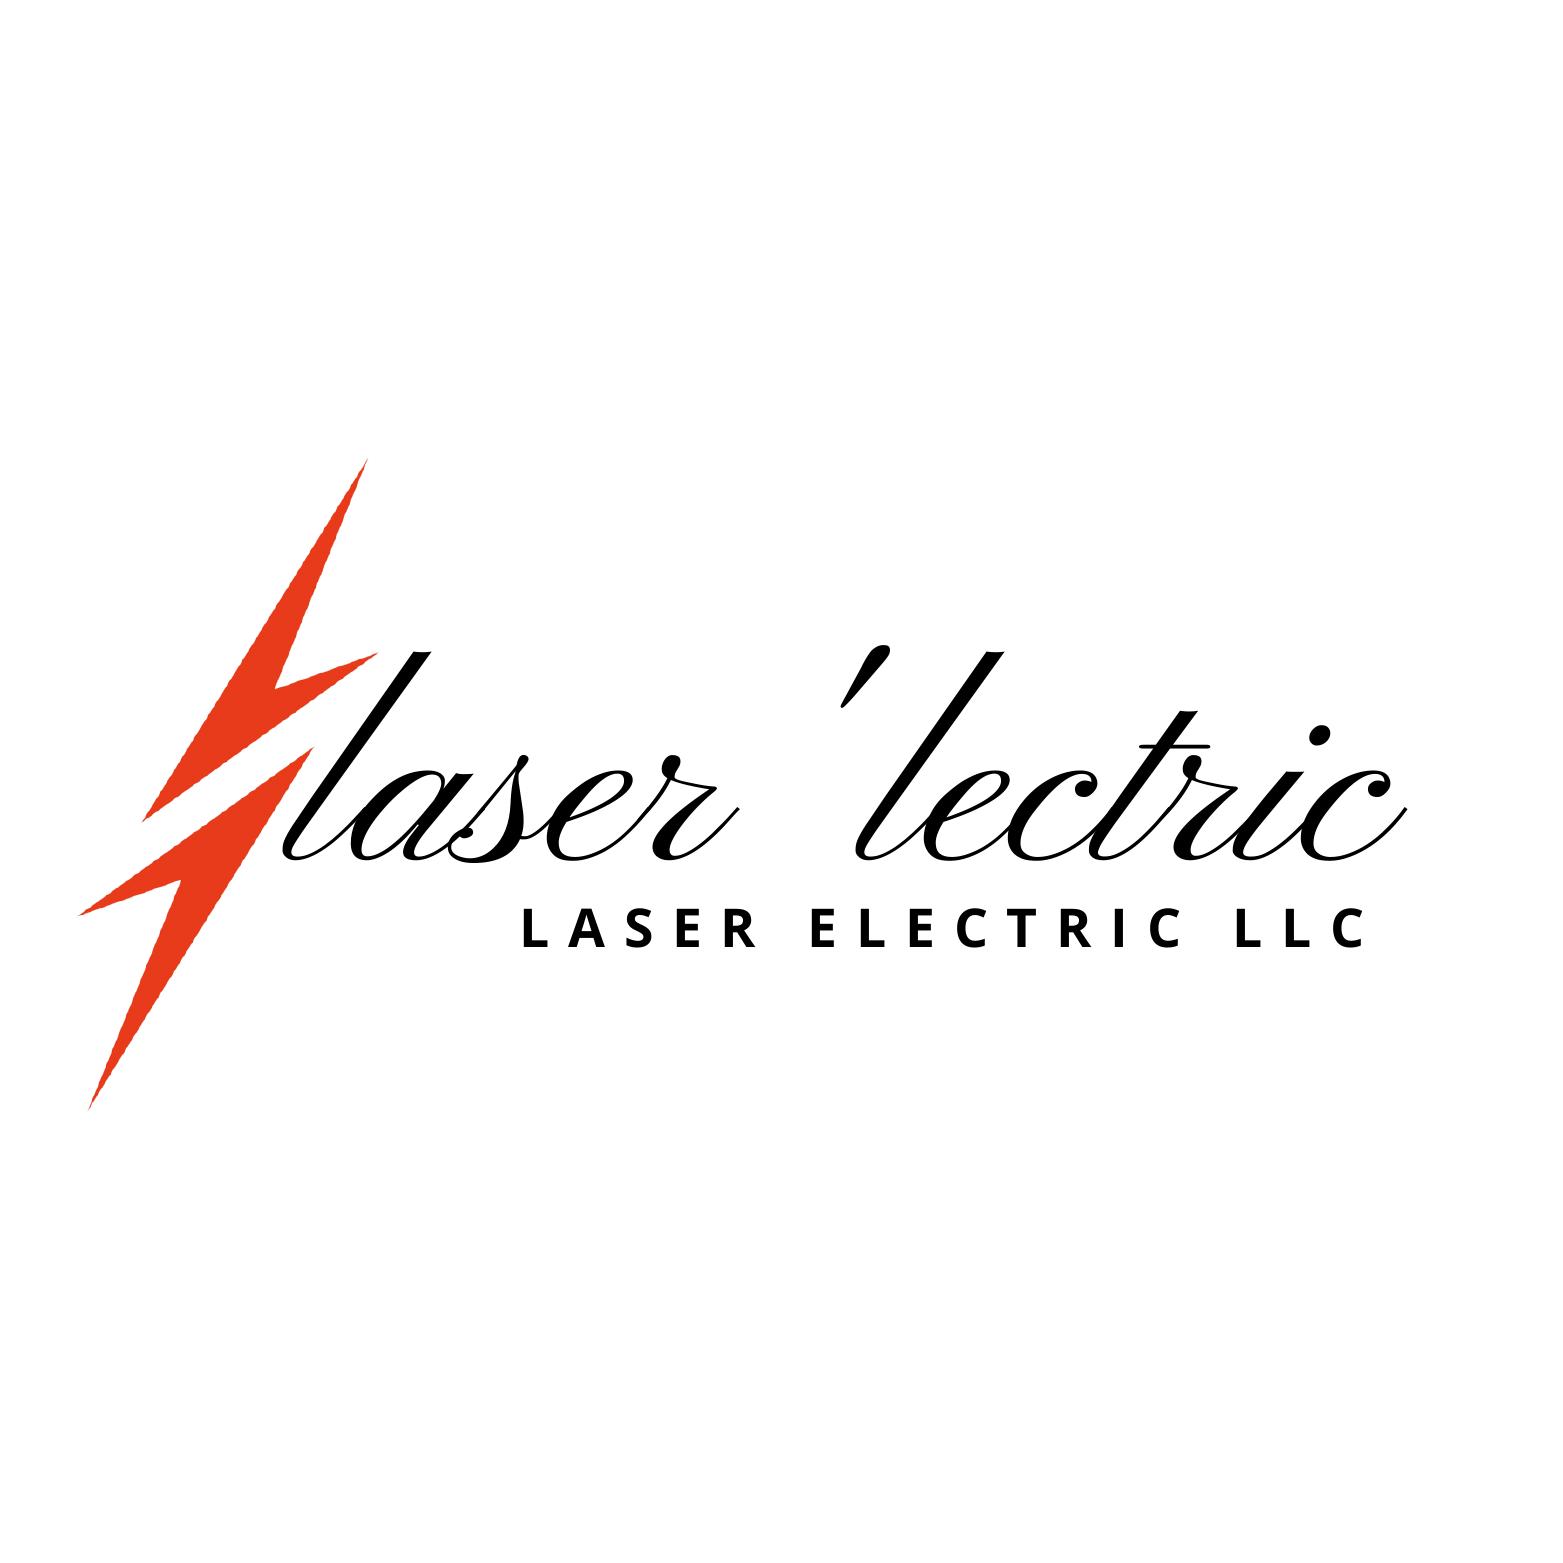 Laser 'Lectric Logo